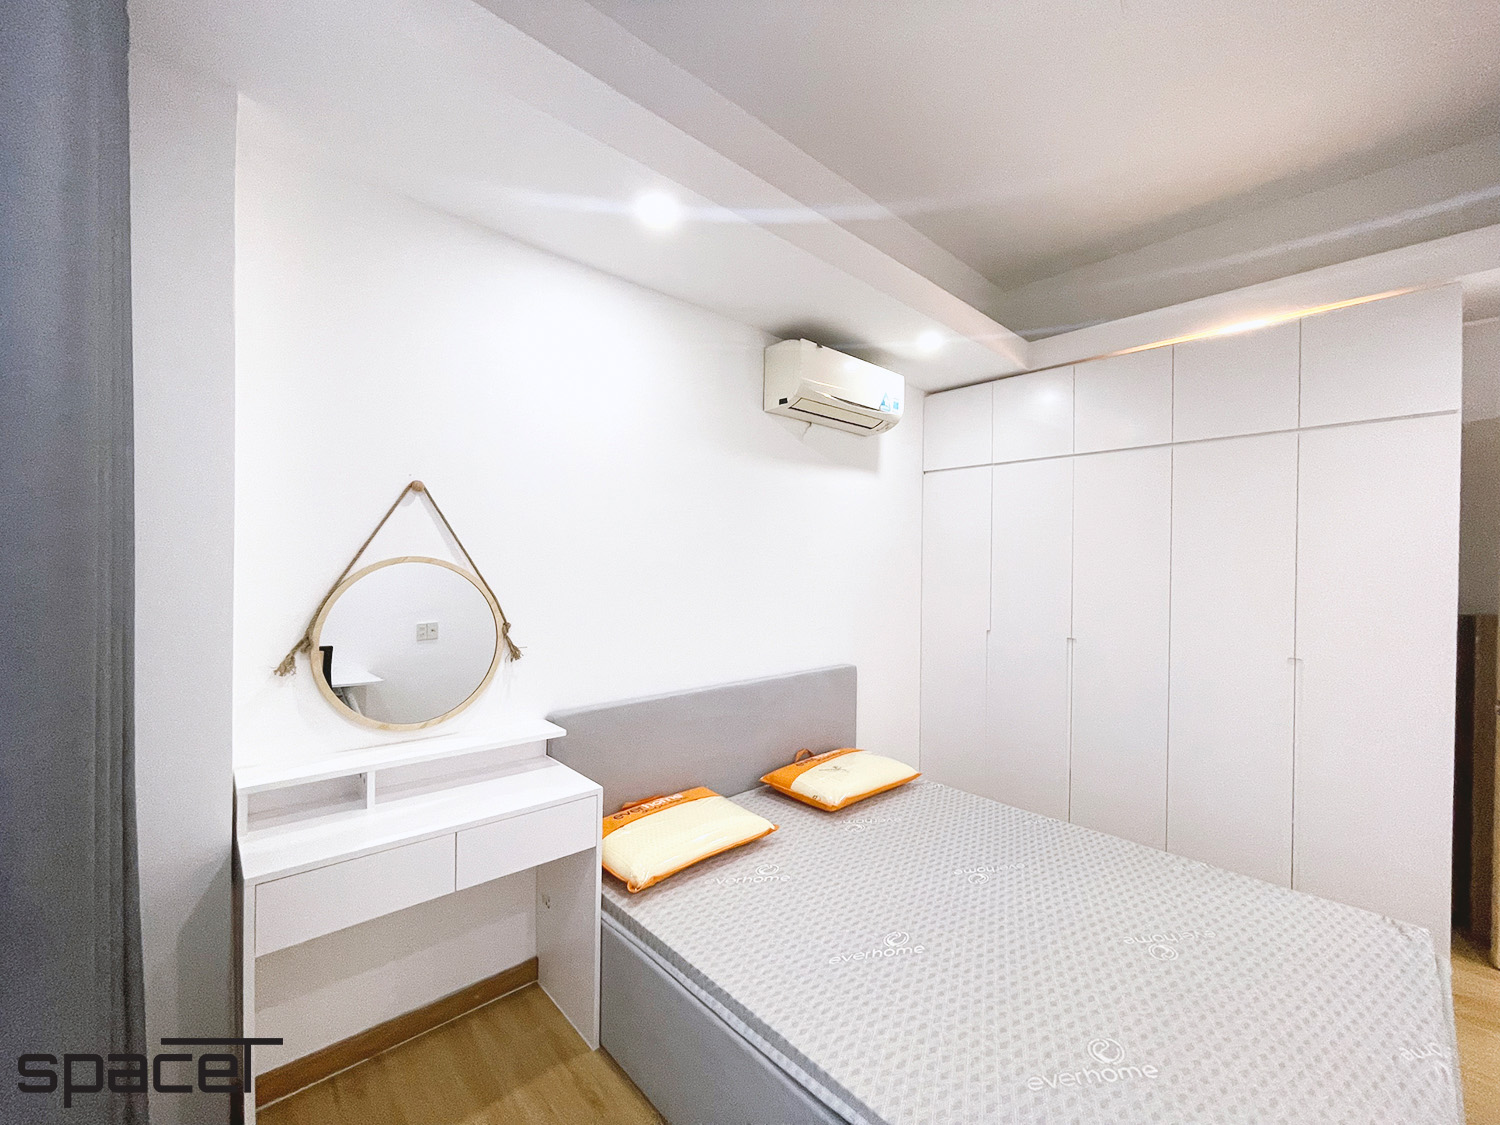 Phòng ngủ, phong cách Tối giản Minimalist, hoàn thiện nội thất, căn hộ Homyland 2 Quận 2